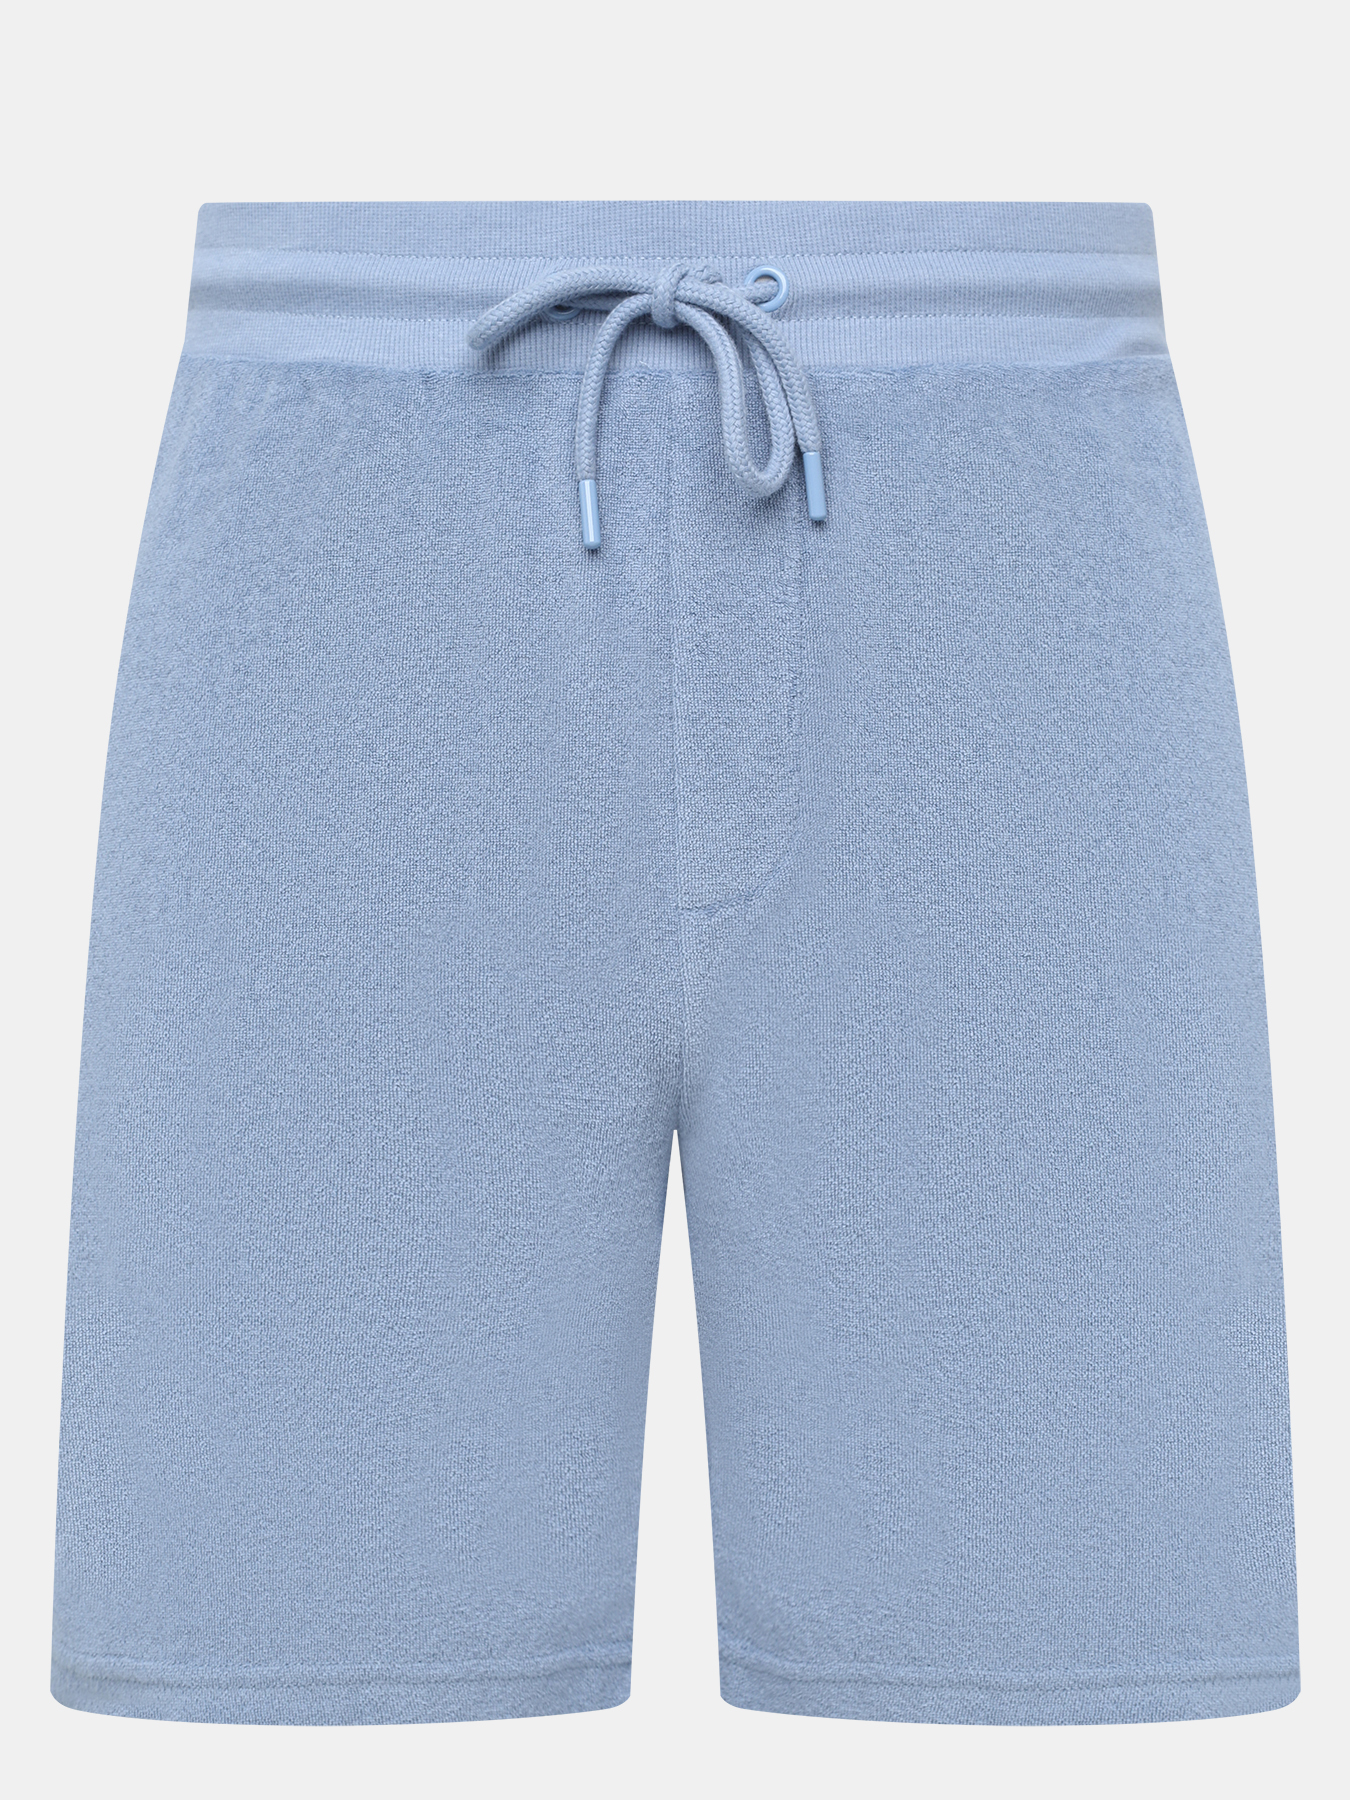 Спортивные шорты мужские FINISTERRE 453807 синие 50 RU